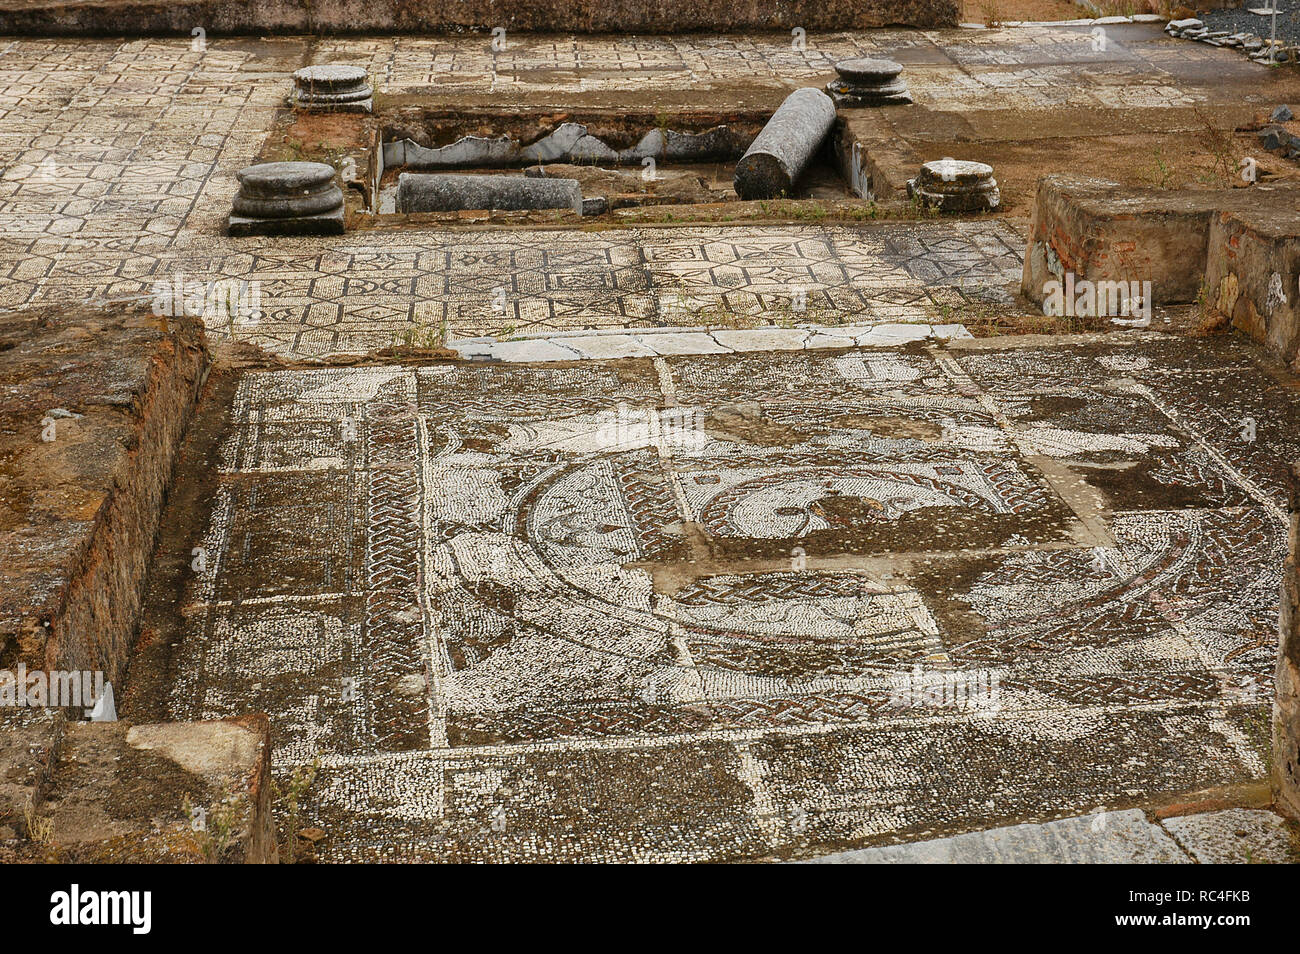 Villa romana di Pisoes. Pavimento a mosaico raffigurante geometrici e motivi naturalistici. Il Portogallo. L'Alentejo. Beja. Foto Stock